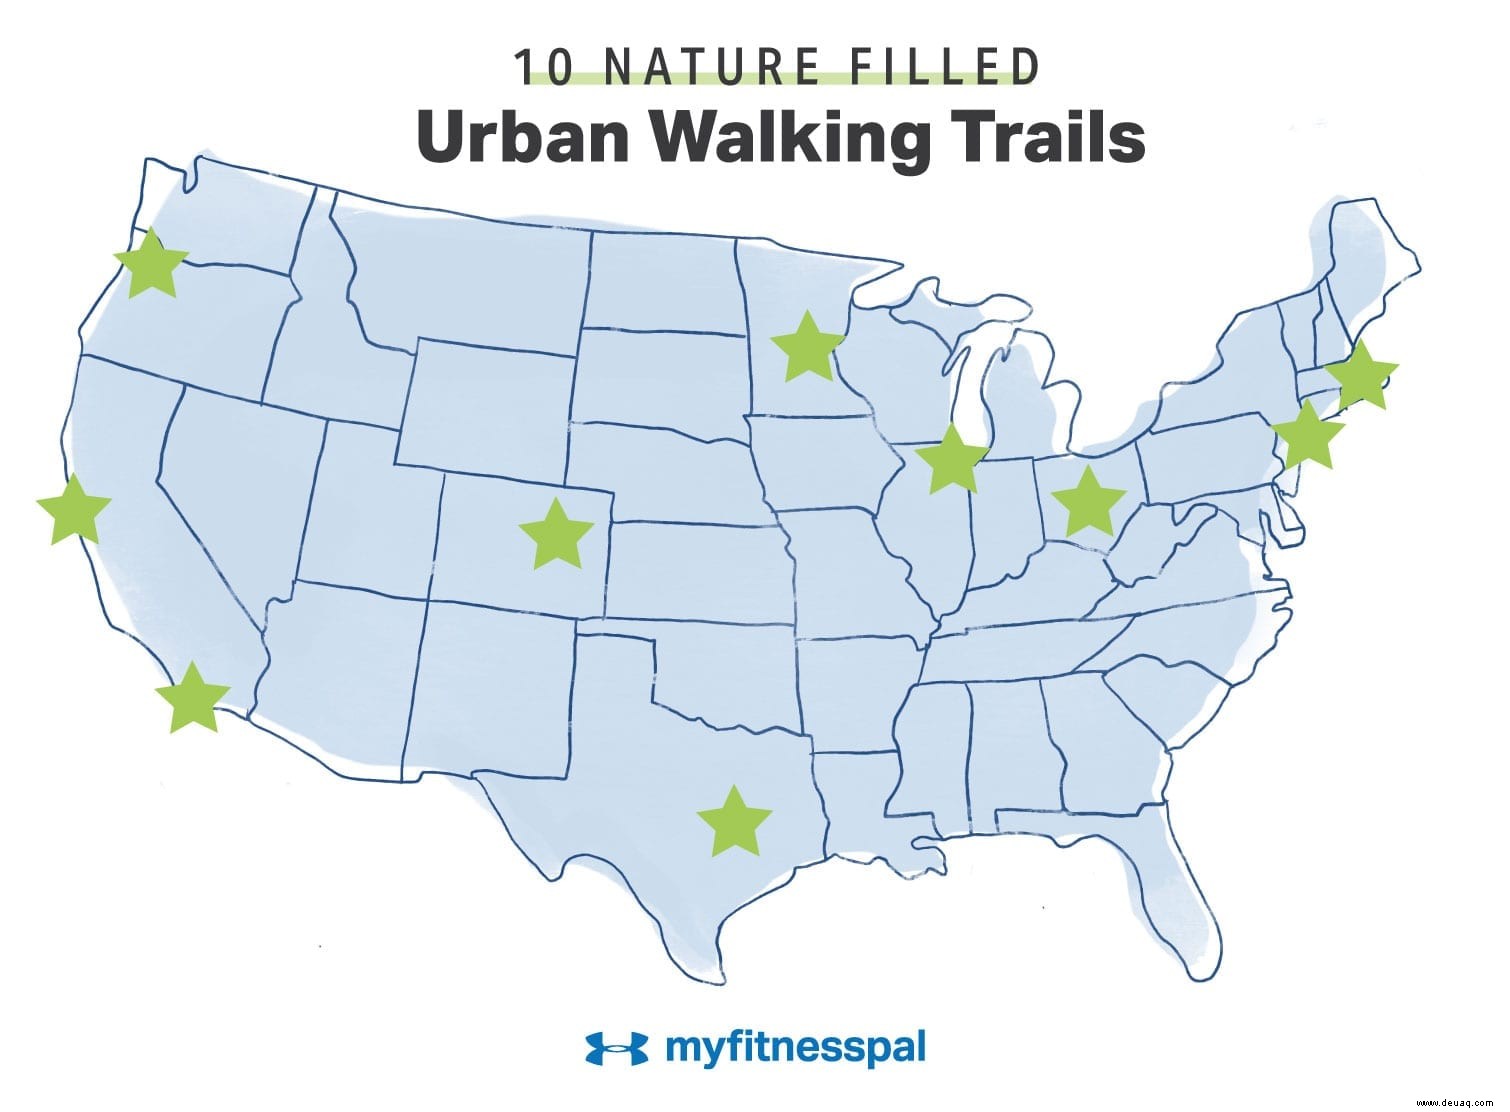 10 naturbelassene Stadtwanderwege in den USA 